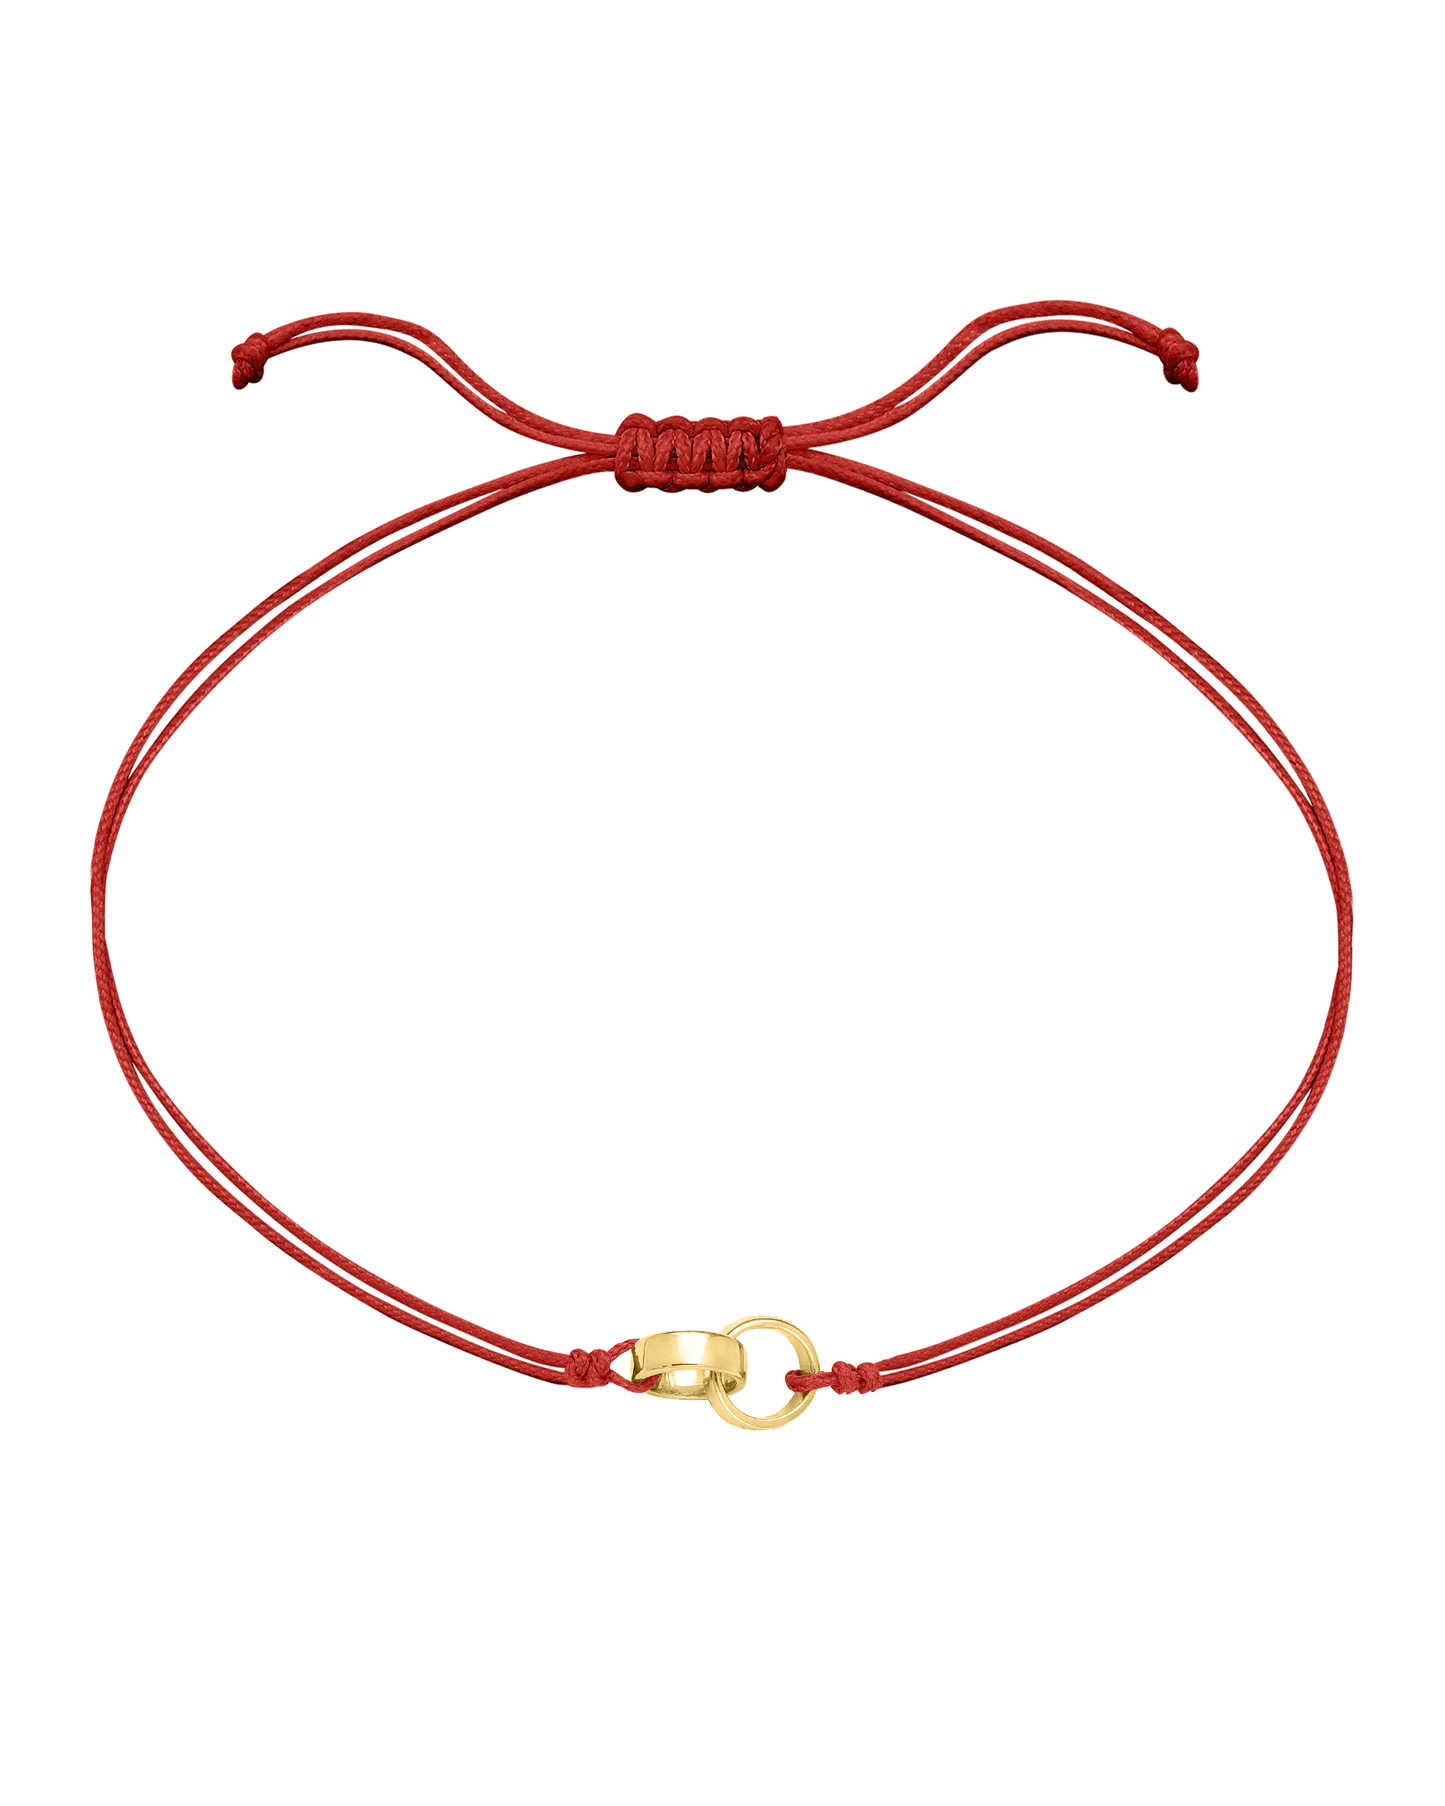 Engravable Links of Love - 18K Gold Vermeil Bracelets magal-dev 2 Red 